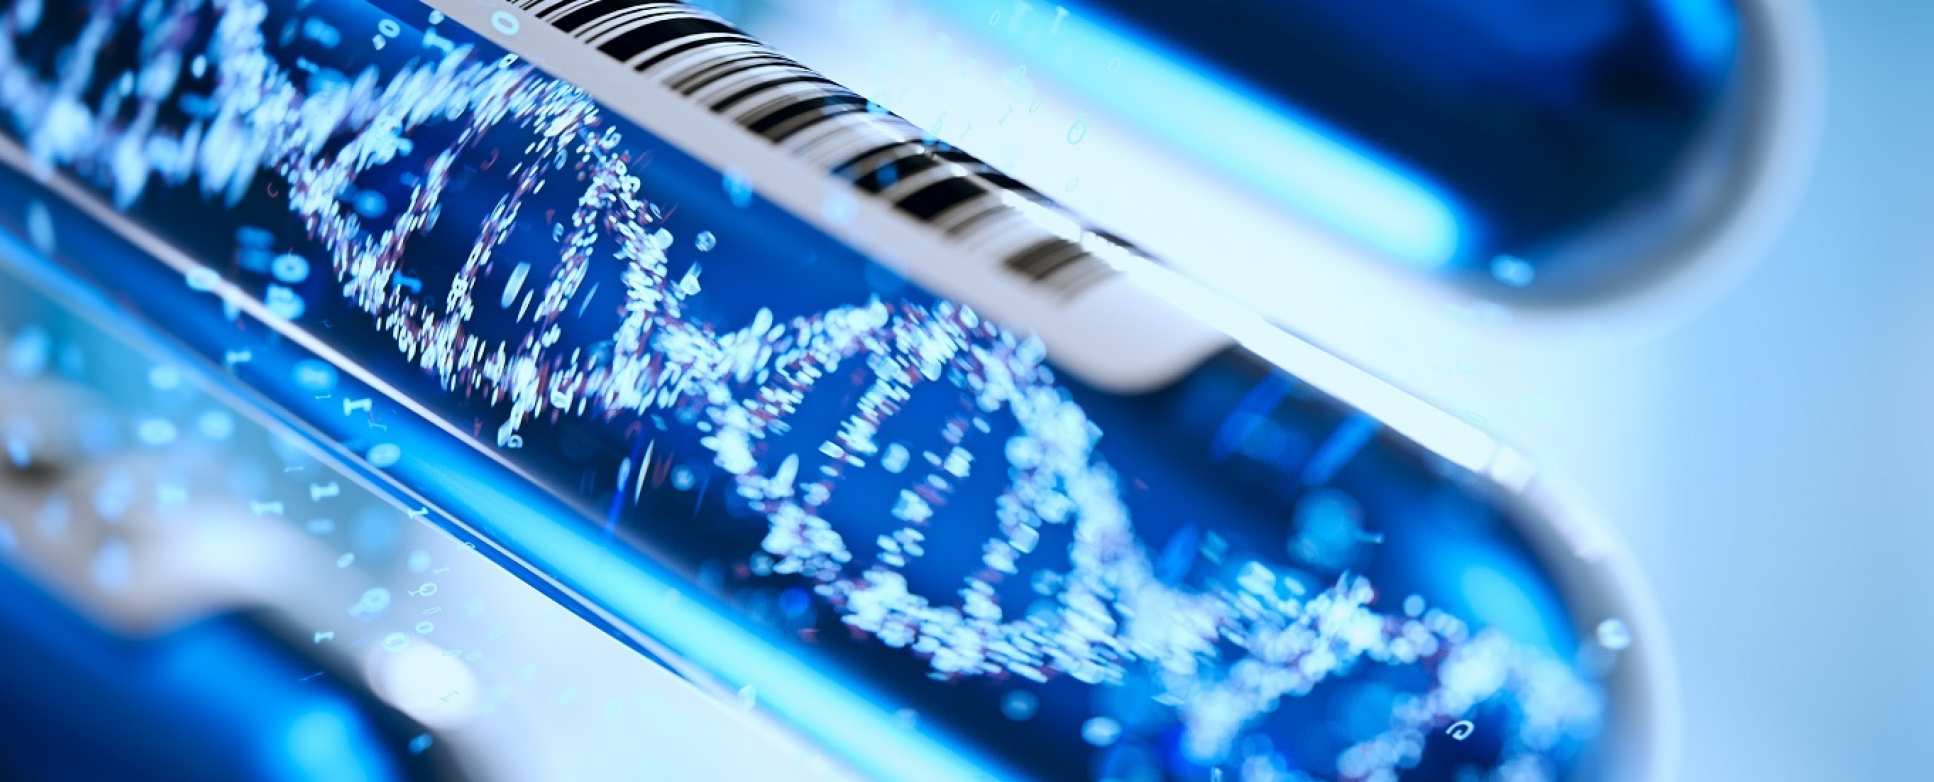 Molecule DNA Forming Inside Test Tube